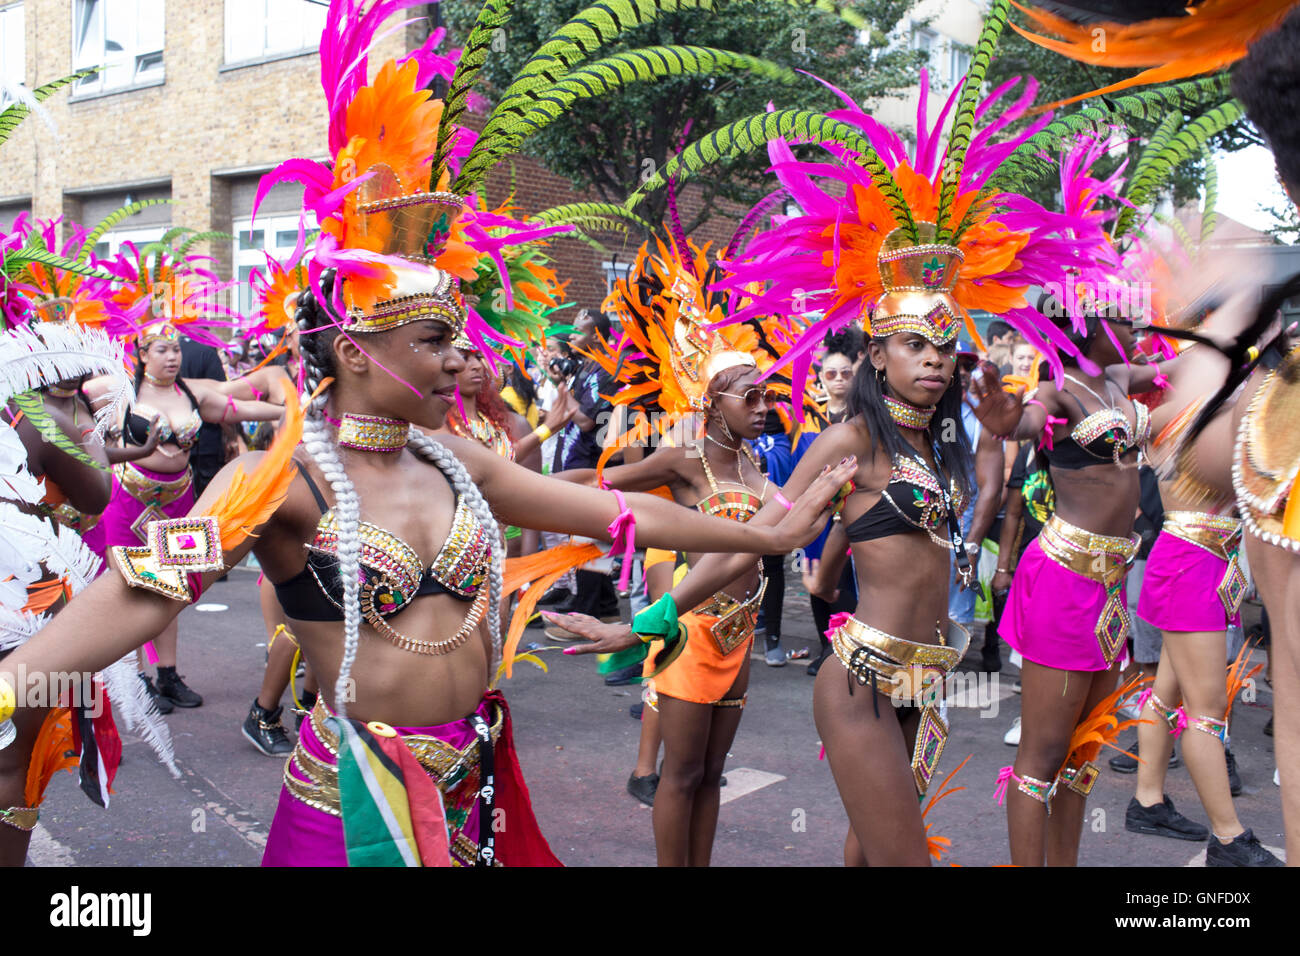 Londres, Royaume-Uni. Le 29 août, 2016. Le carnaval de Notting Hill est un événement annuel qui a eu lieu depuis 1966 dans les rues de Notting Hill, et le Royal Borough de Kensington et Chelsea, Londres, Angleterre, chaque mois d'août sur deux jours. Le carnaval de Notting Hill est le plus grand festival de rue en Europe et a pris naissance en 1964 comme un moyen pour les communautés afro-antillaise pour célébrer leurs propres cultures et traditions. Credit : Eoghan Hanrahan/Alamy Live News Banque D'Images